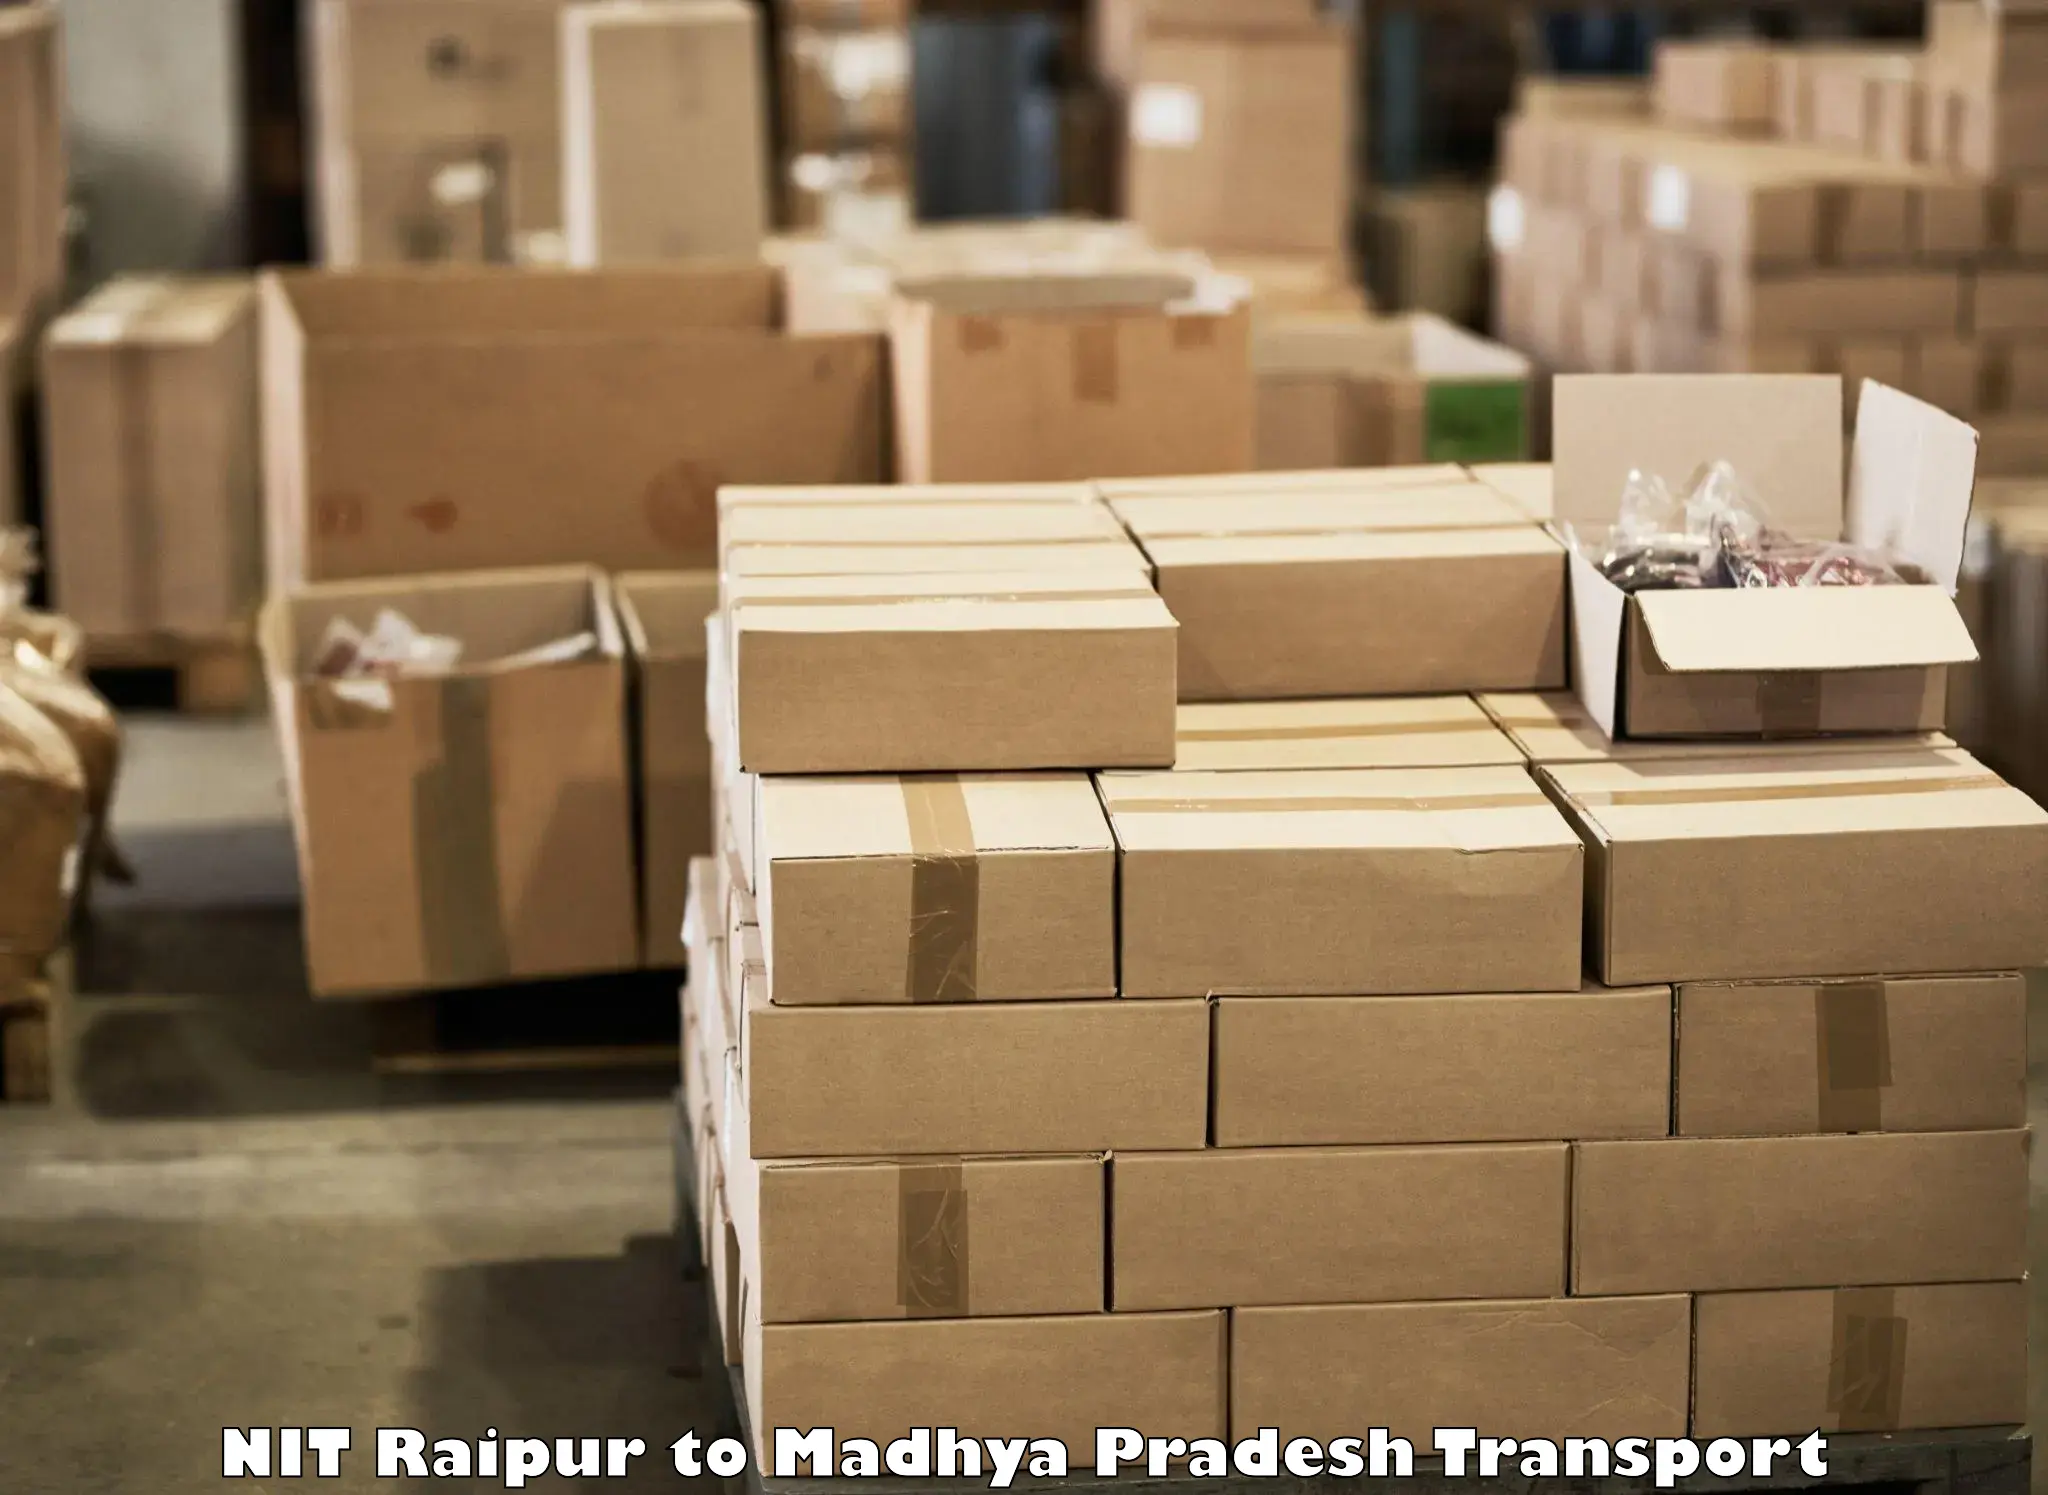 Pick up transport service NIT Raipur to Banda Sagar